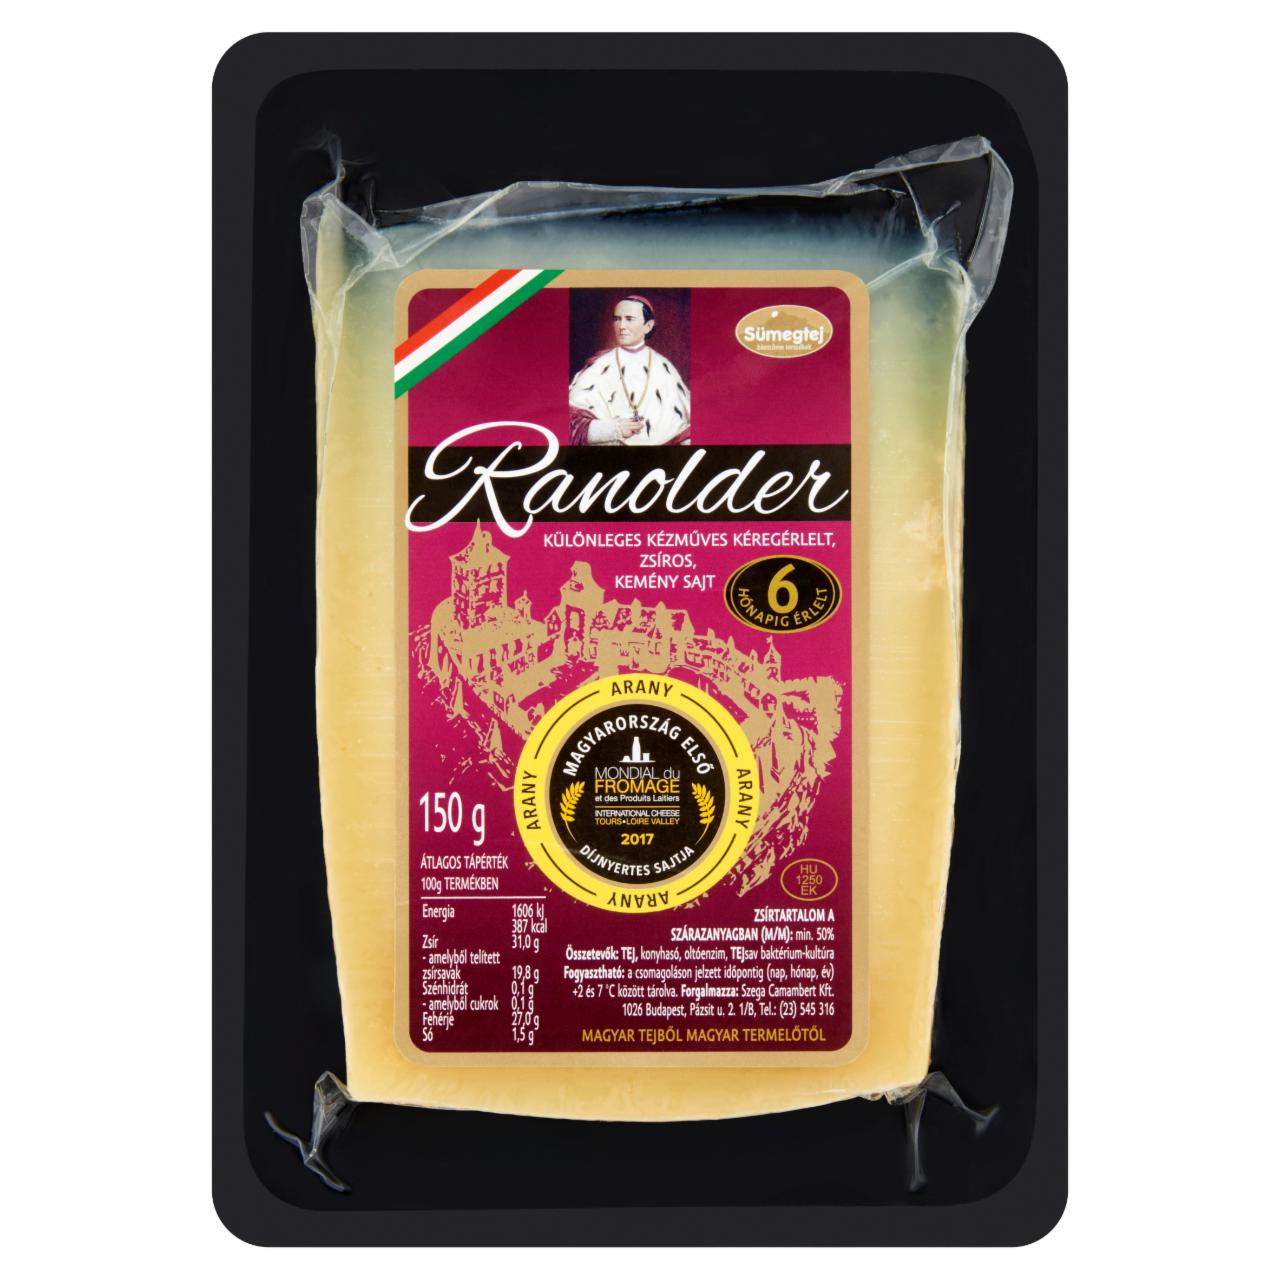 Képek - Sümegtej Ranolder különleges kézműves kéregérlelt, zsíros, kemény sajt 150 g